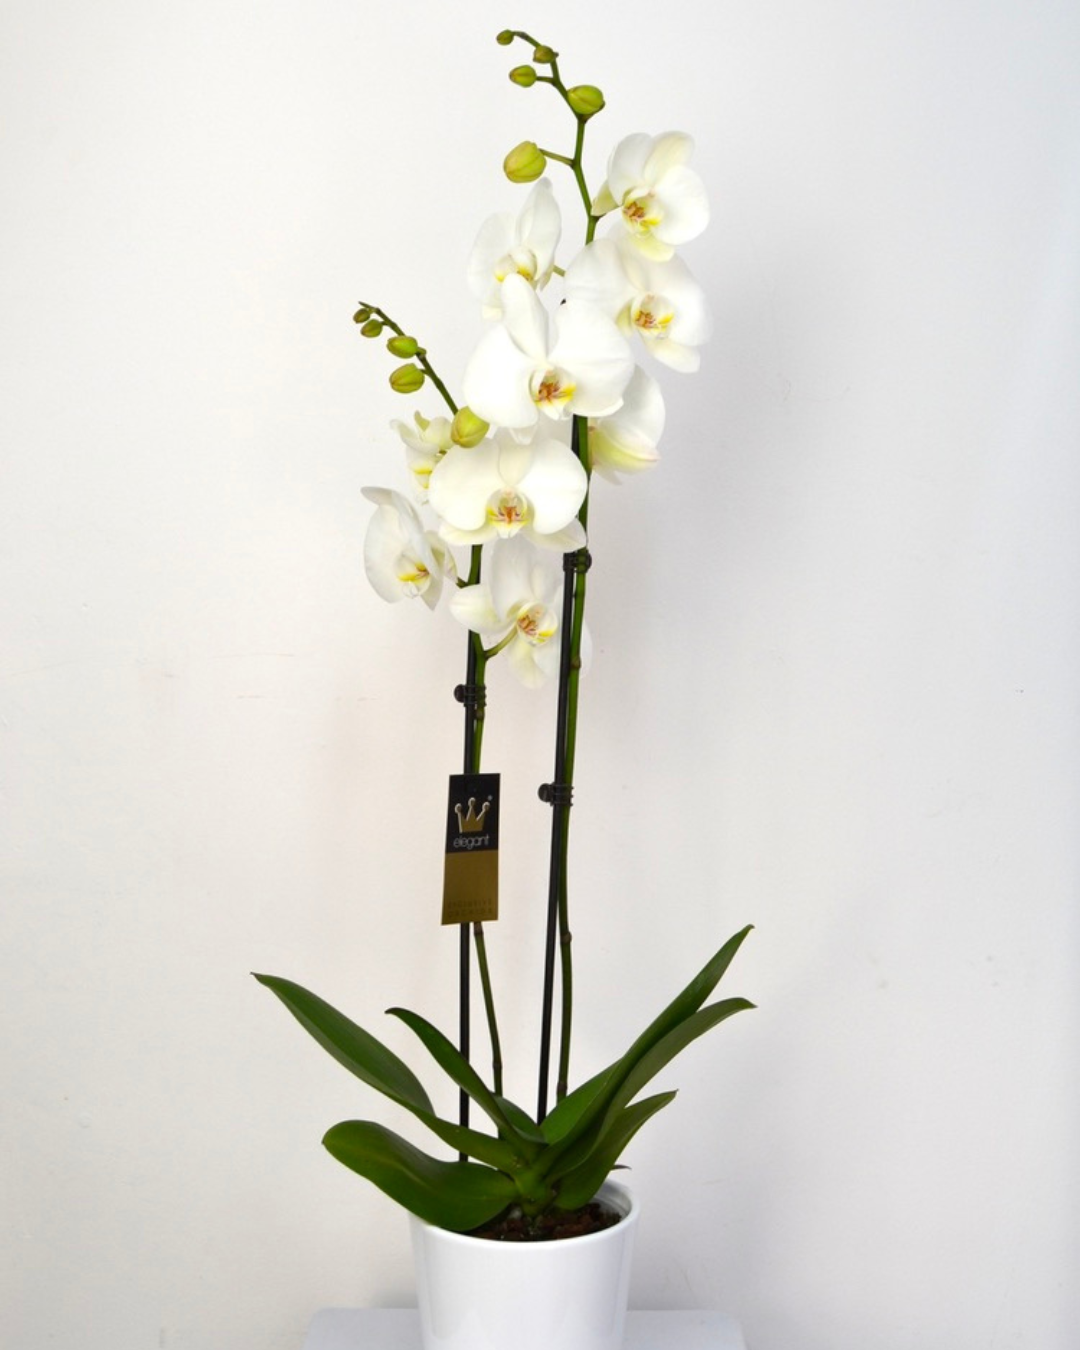 Orquídea  "Bali